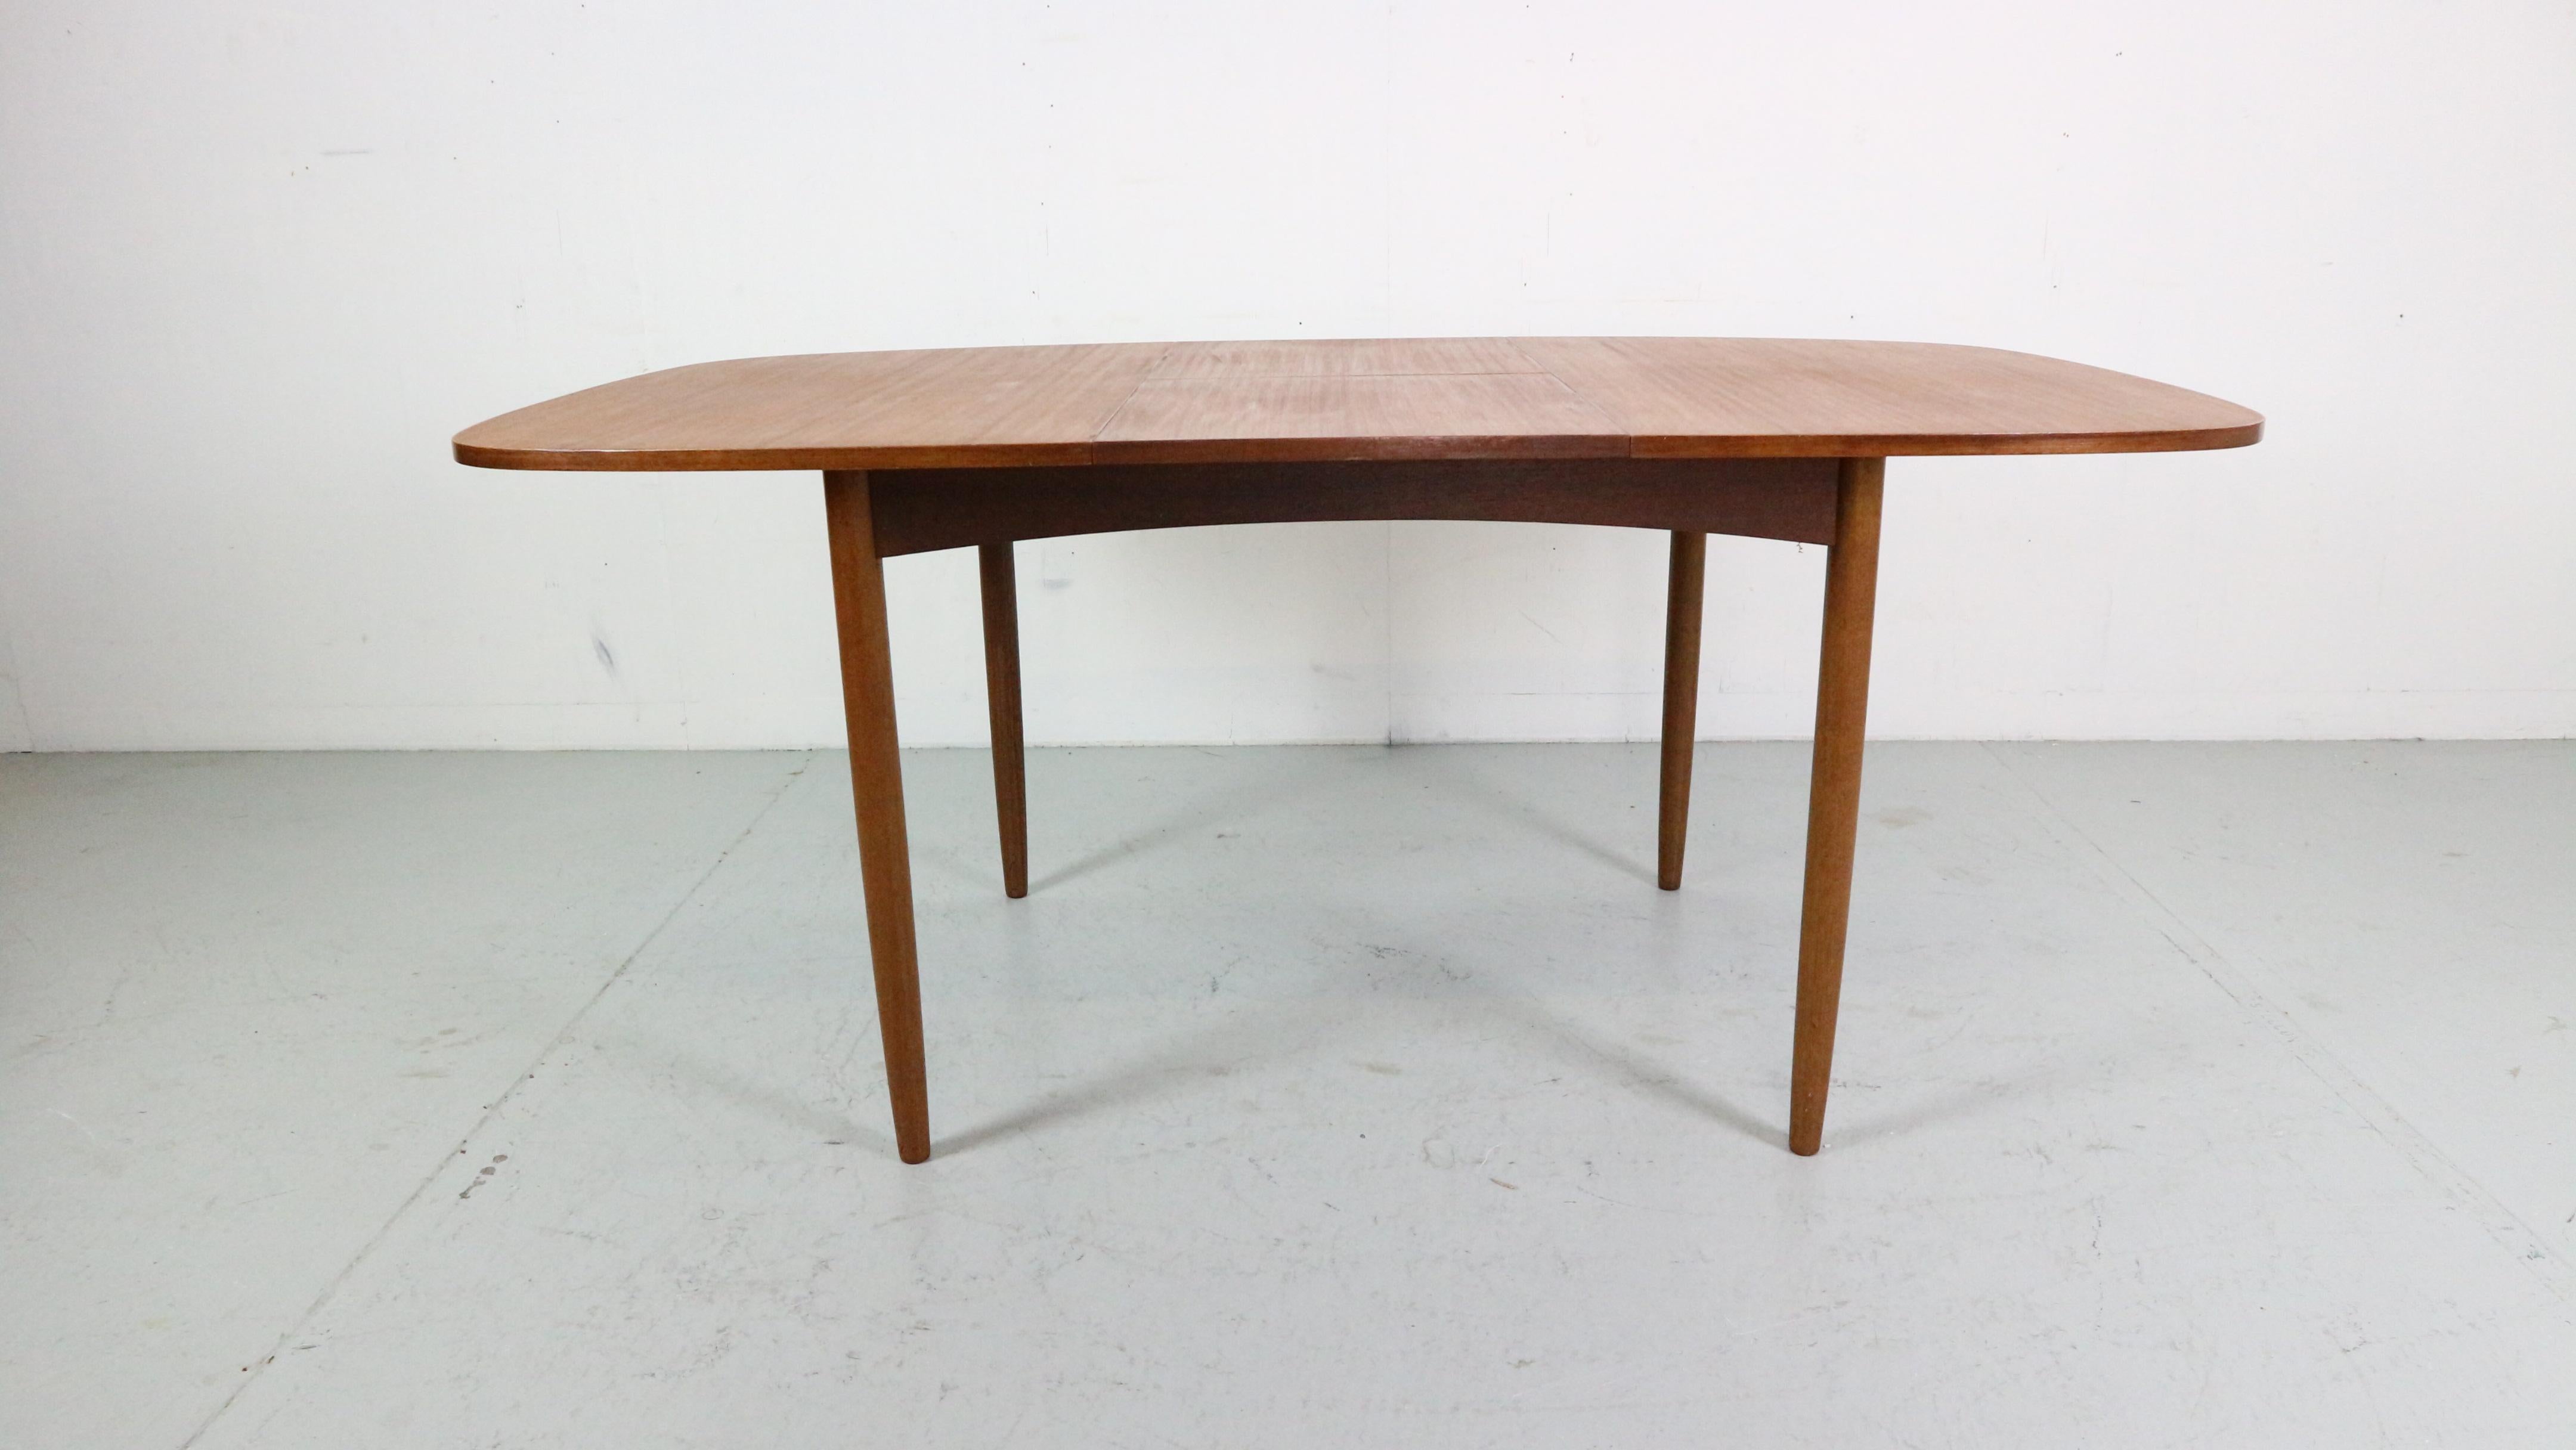 Moderner Esszimmertisch aus der Mitte des Jahrhunderts, hergestellt und entworfen von dem berühmten englischen Möbelhersteller G-Plan, ca. 1960er Jahre.

Der Tisch ist aus Teakholz und Teakholzfurnier gefertigt.
Hat eine schöne ovale